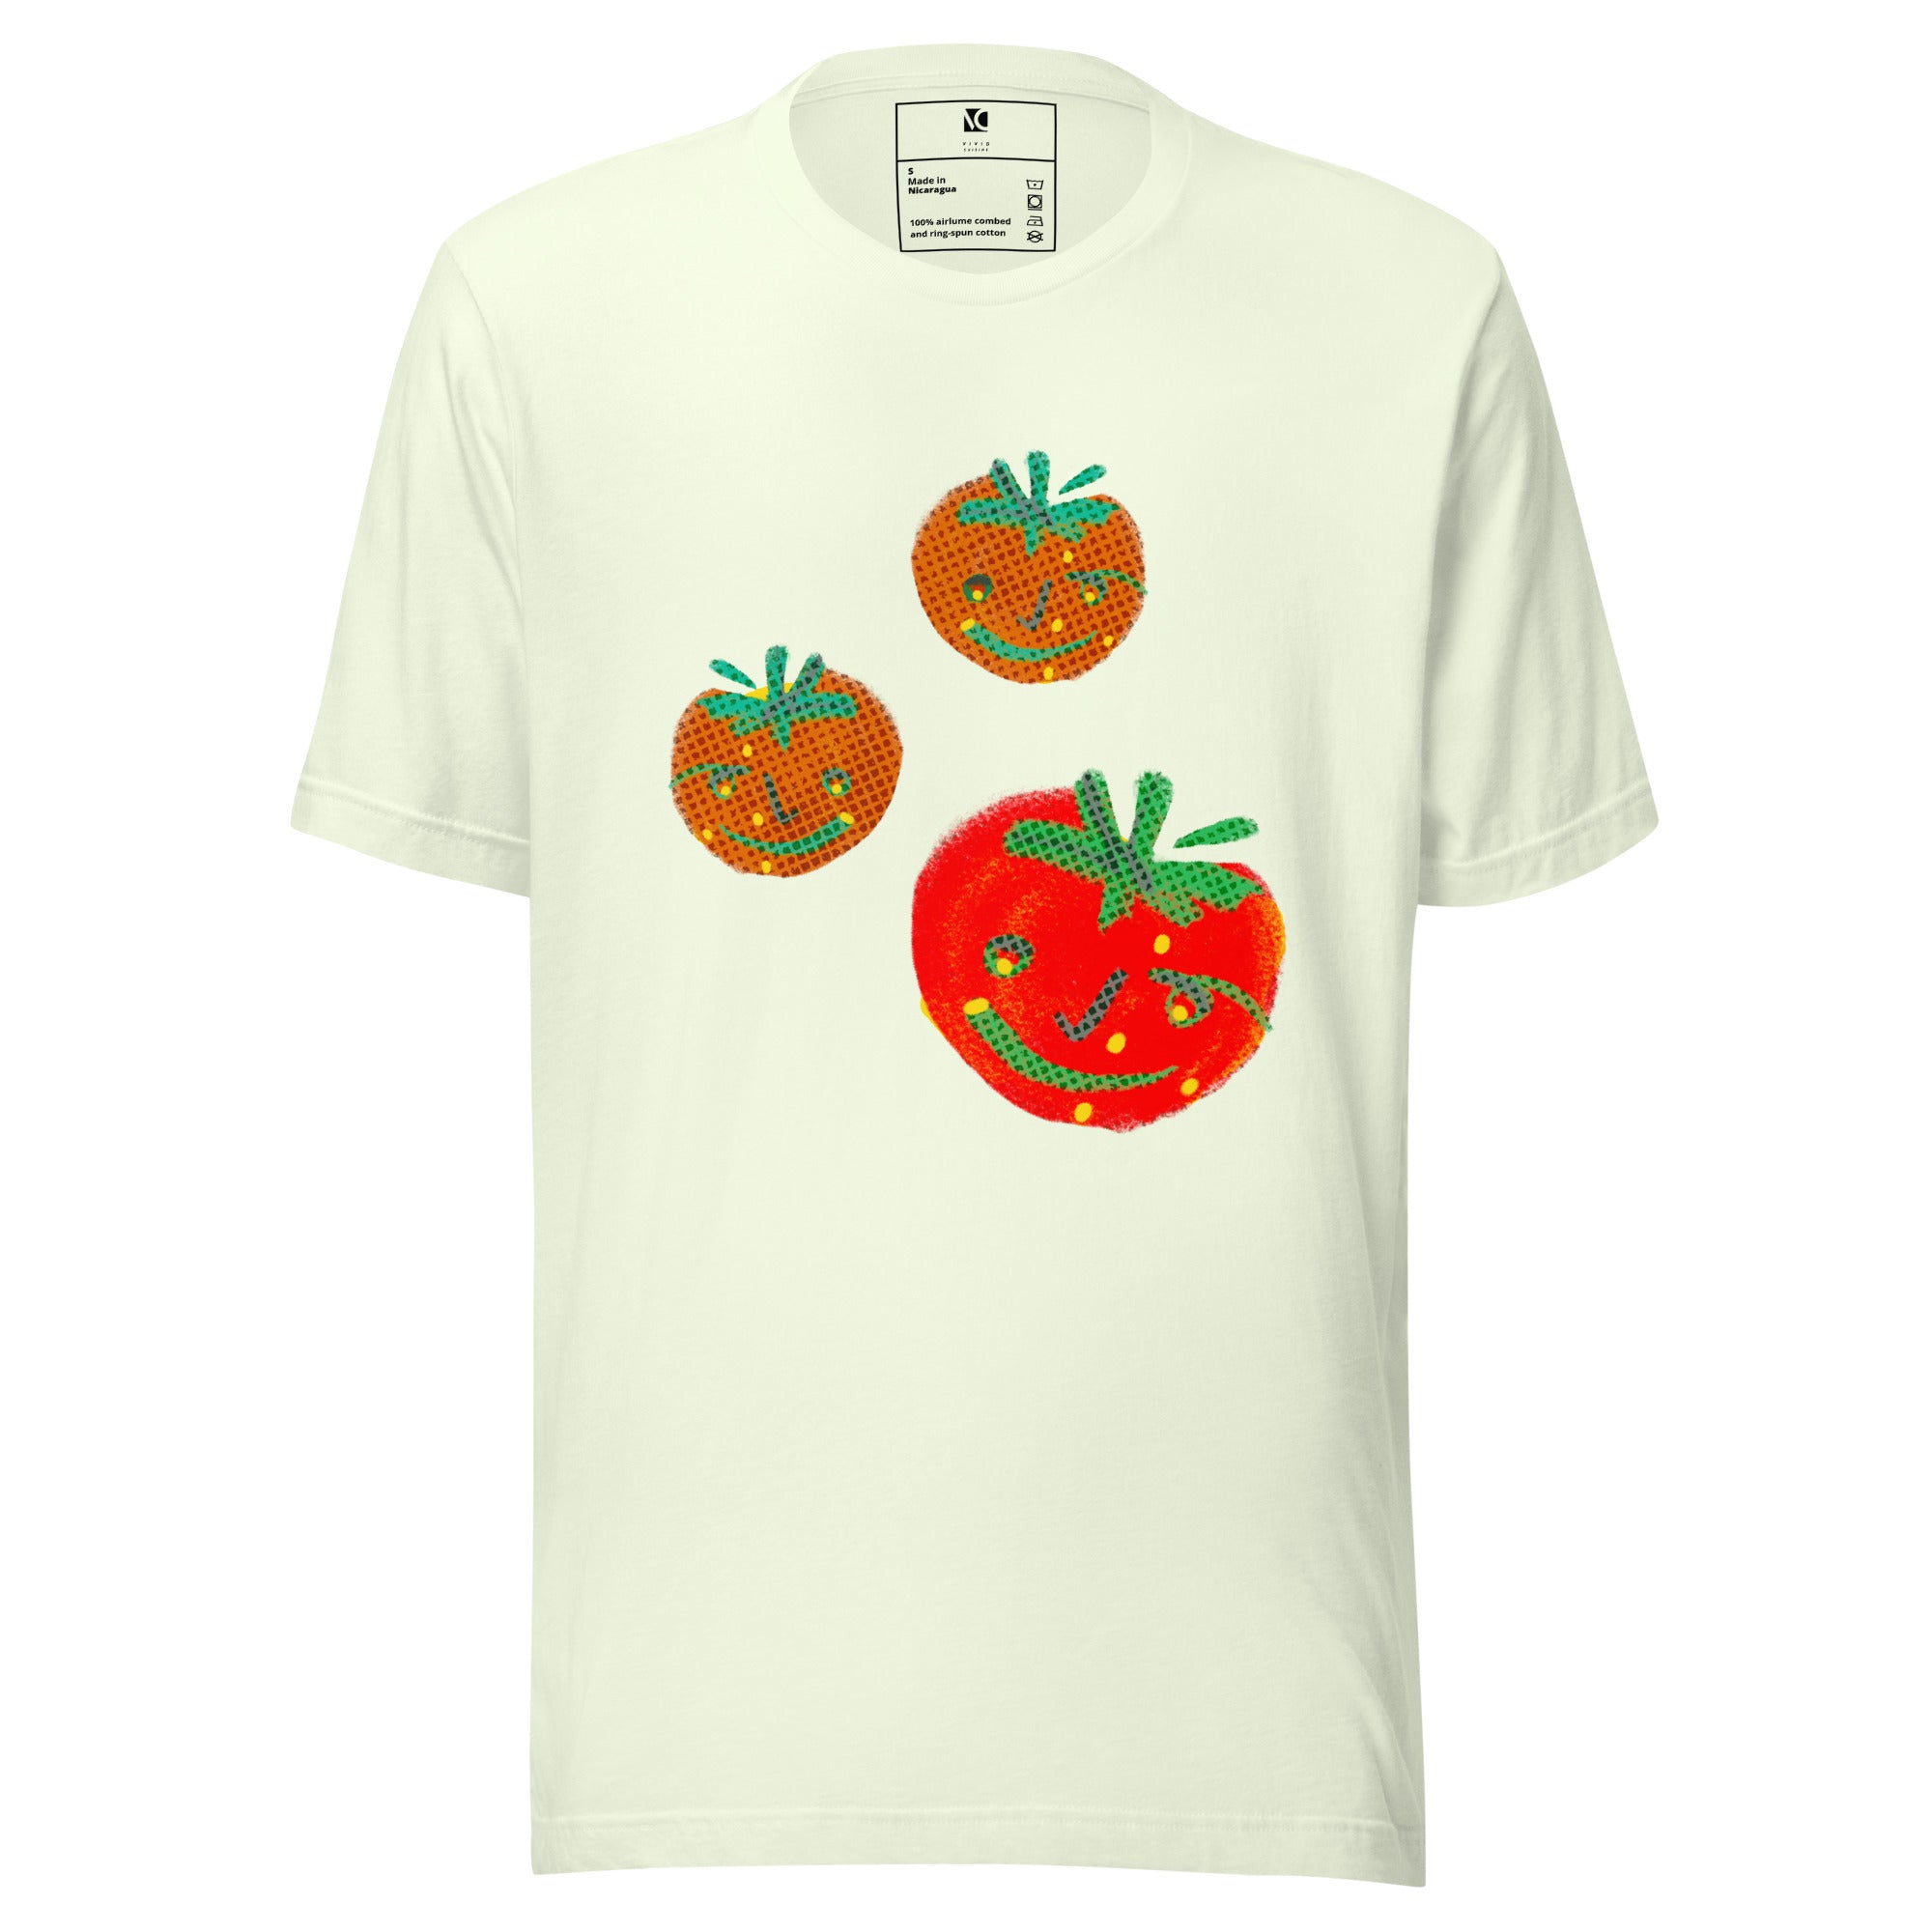 Pomodoro - Unisex T-Shirt